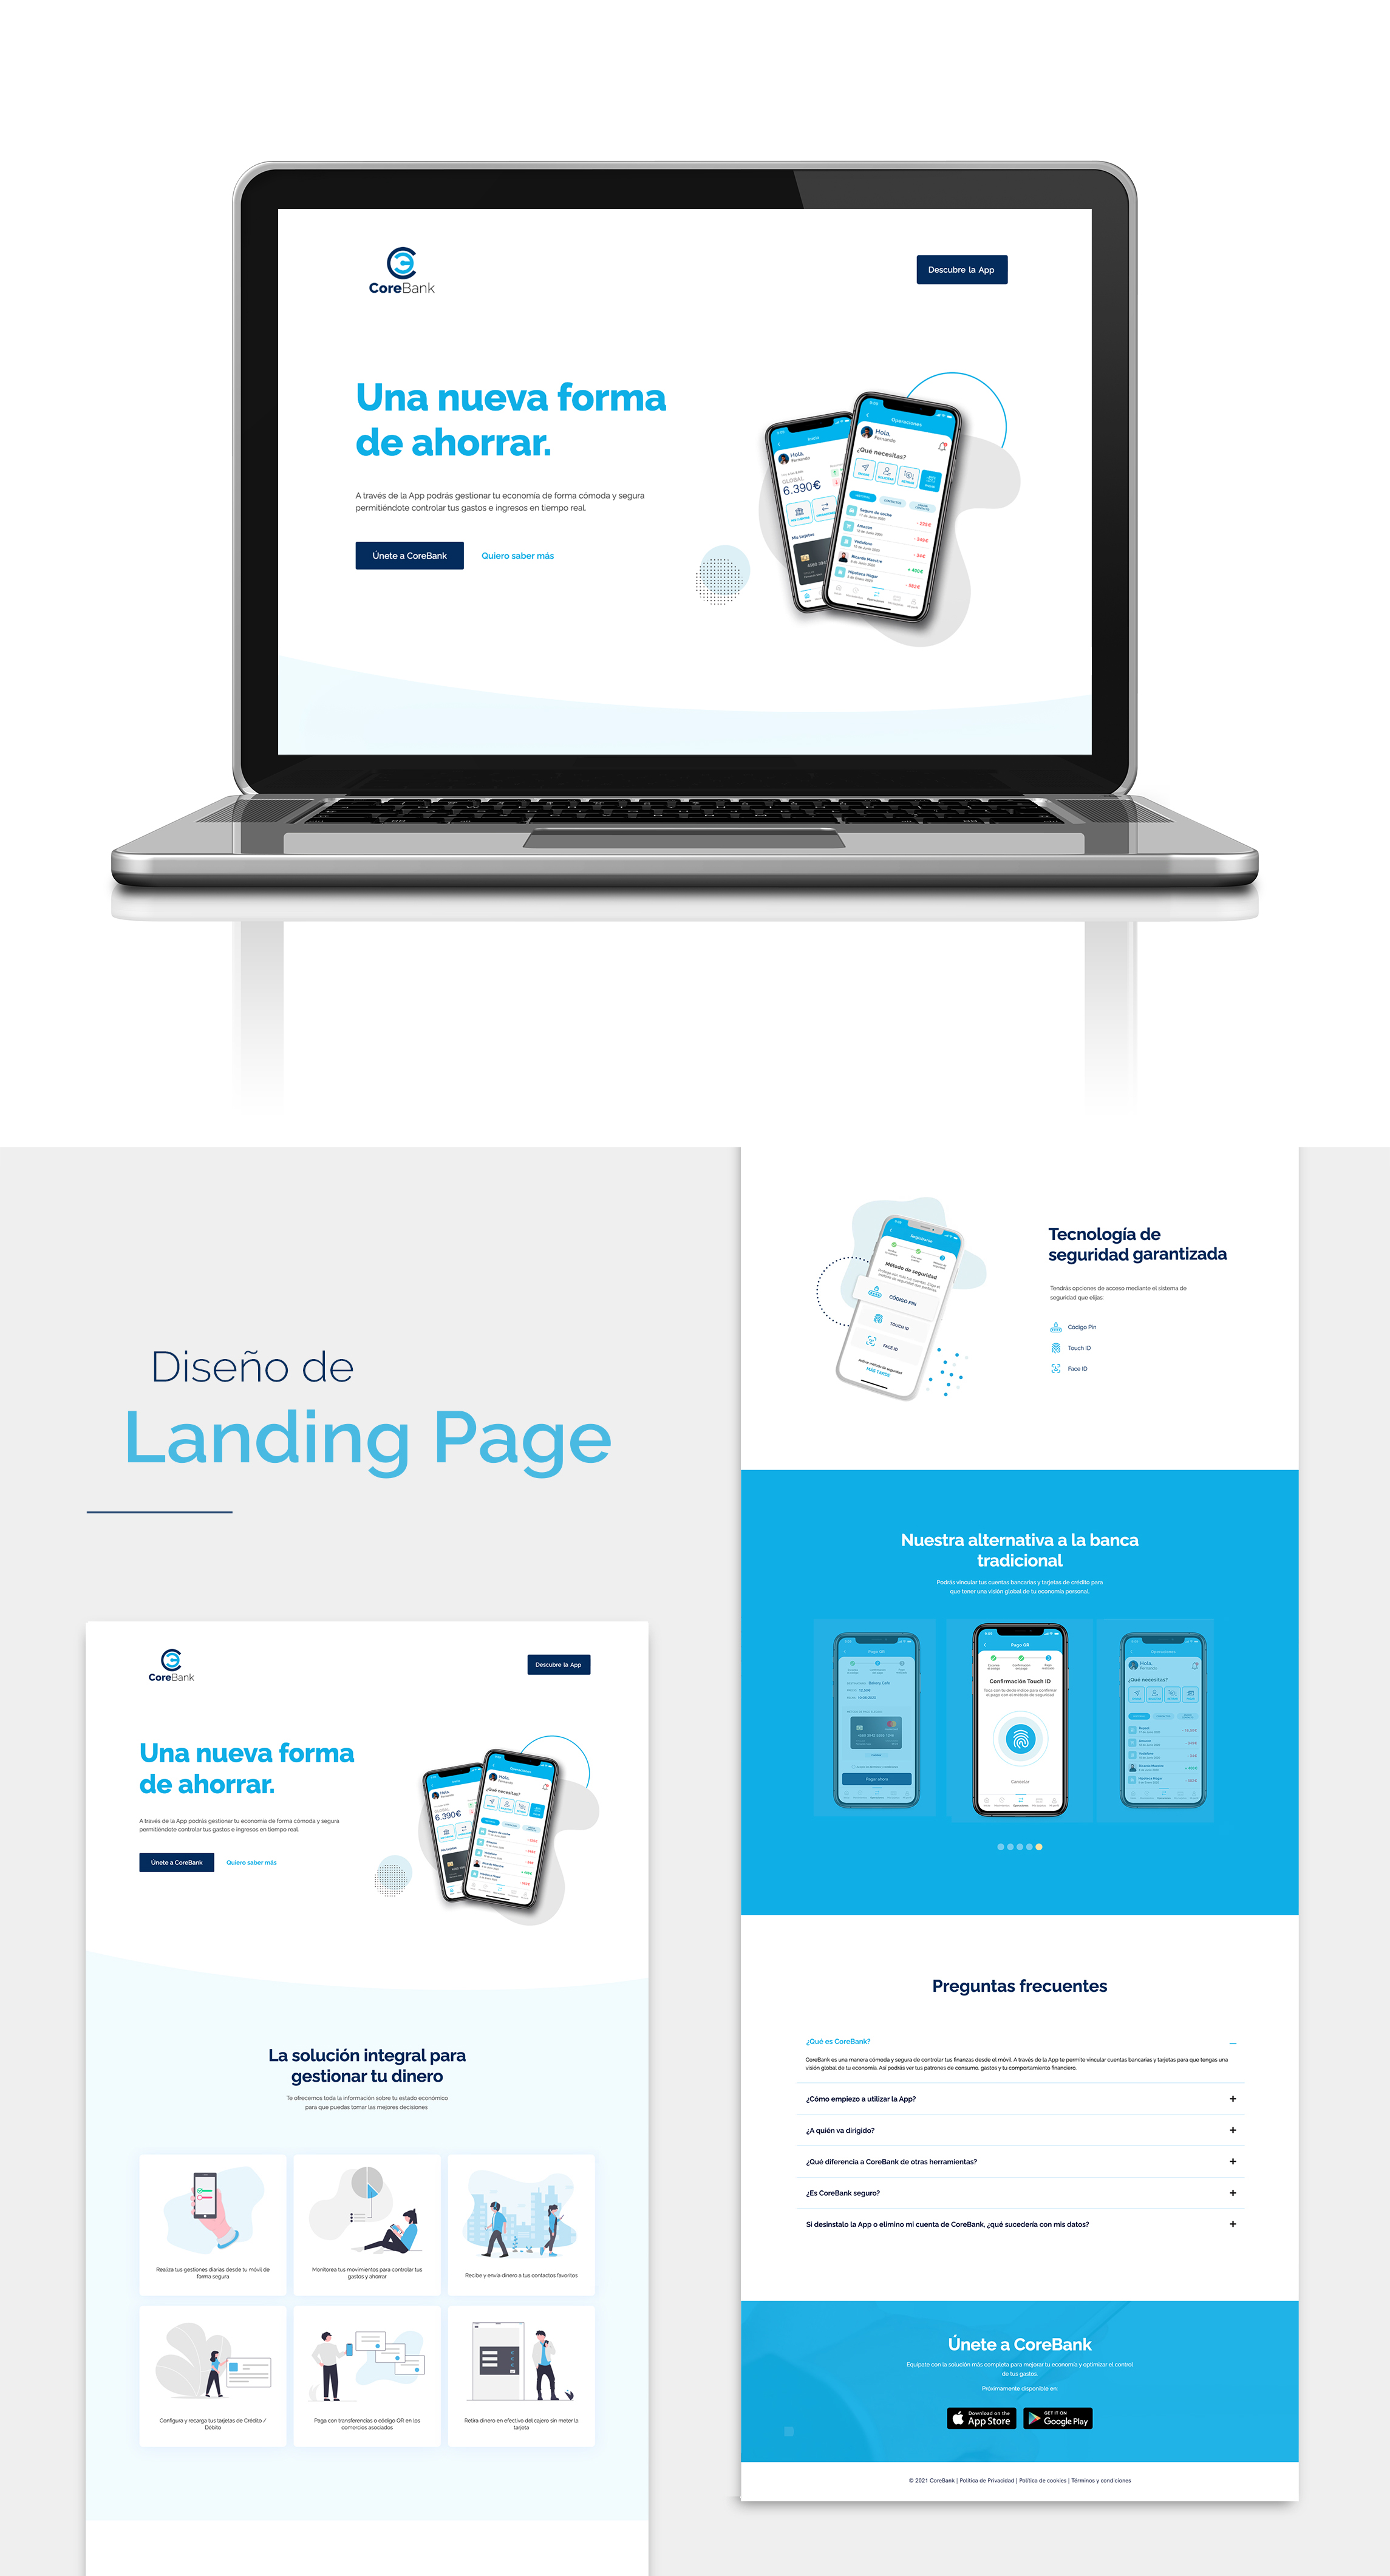 Diseño de landing page